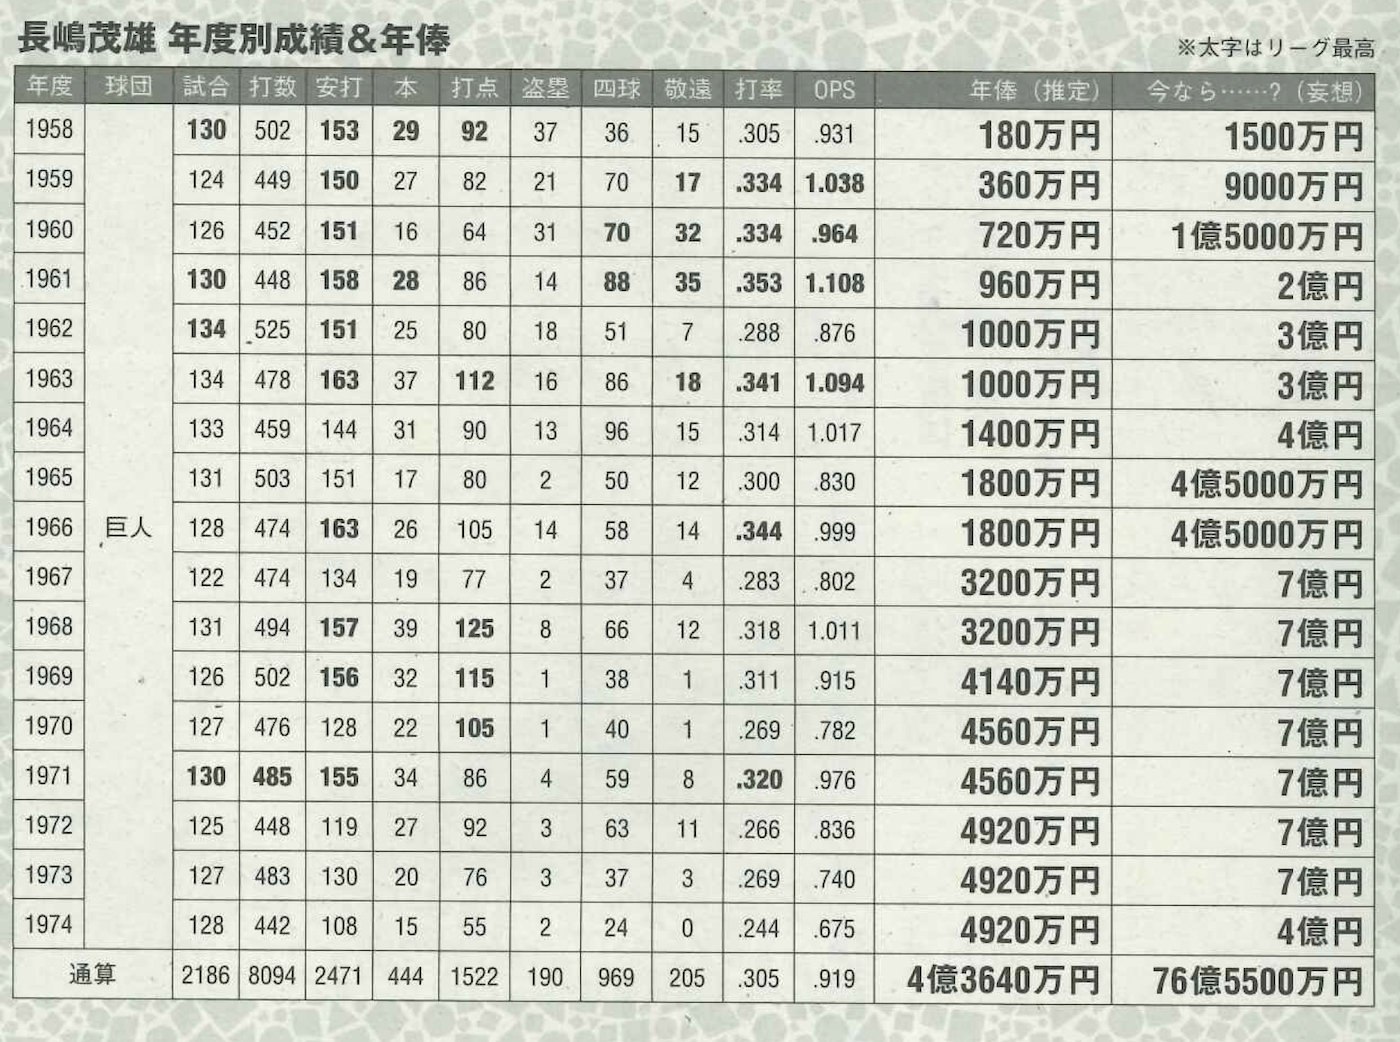 日本プロ野球界が誇る不世出のスーパースター長嶋茂雄の年俸は今ならいくら